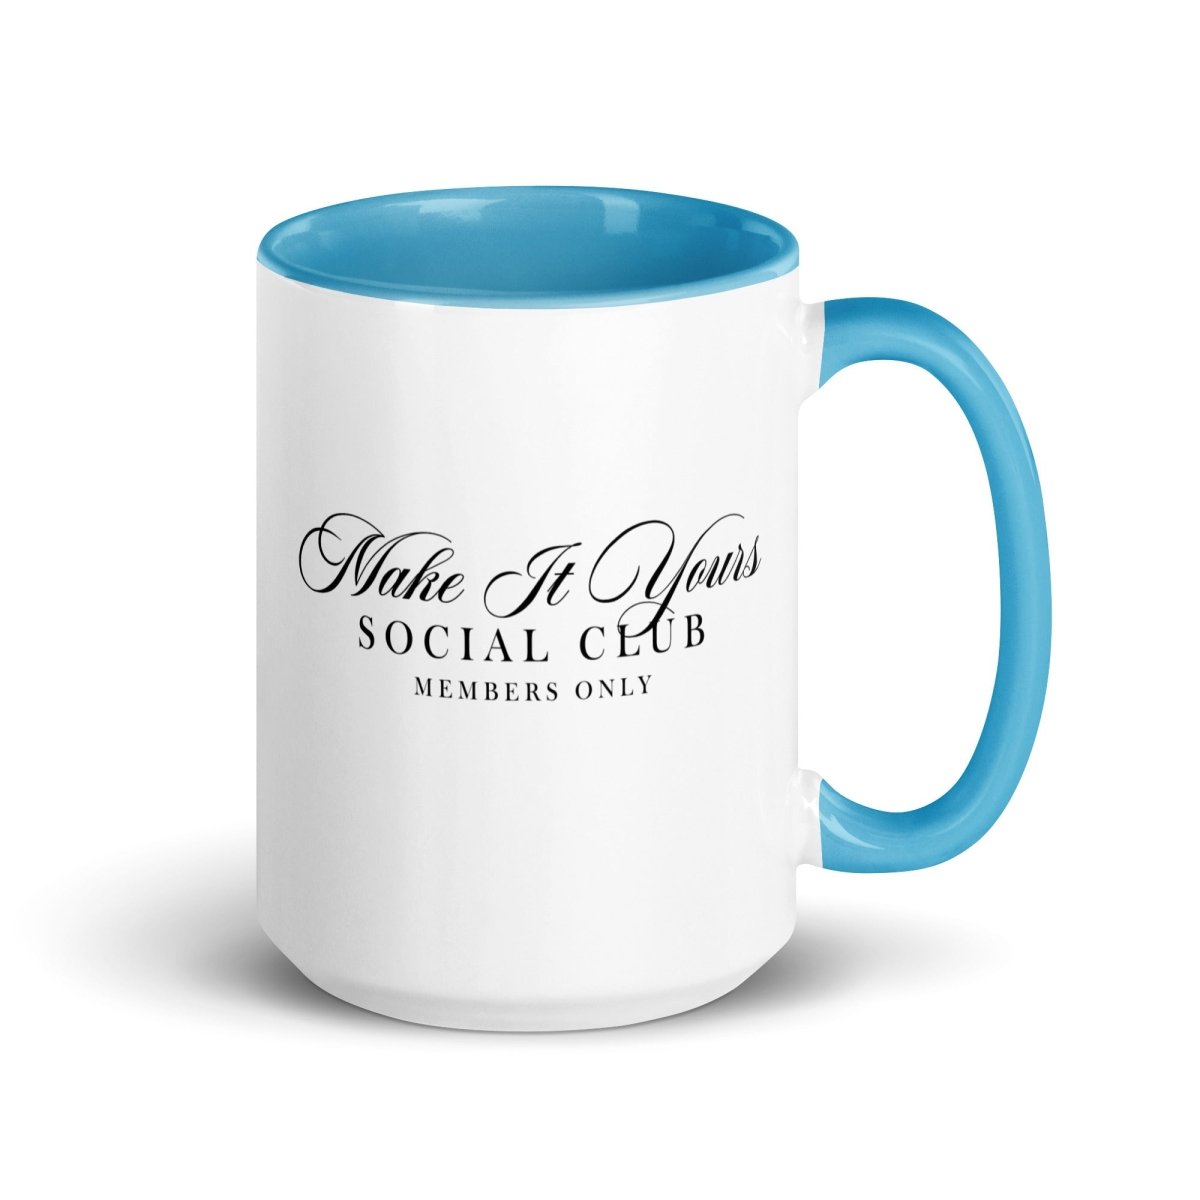 Make It Yours™ 'Social Club' Coffee Mug - United Monograms